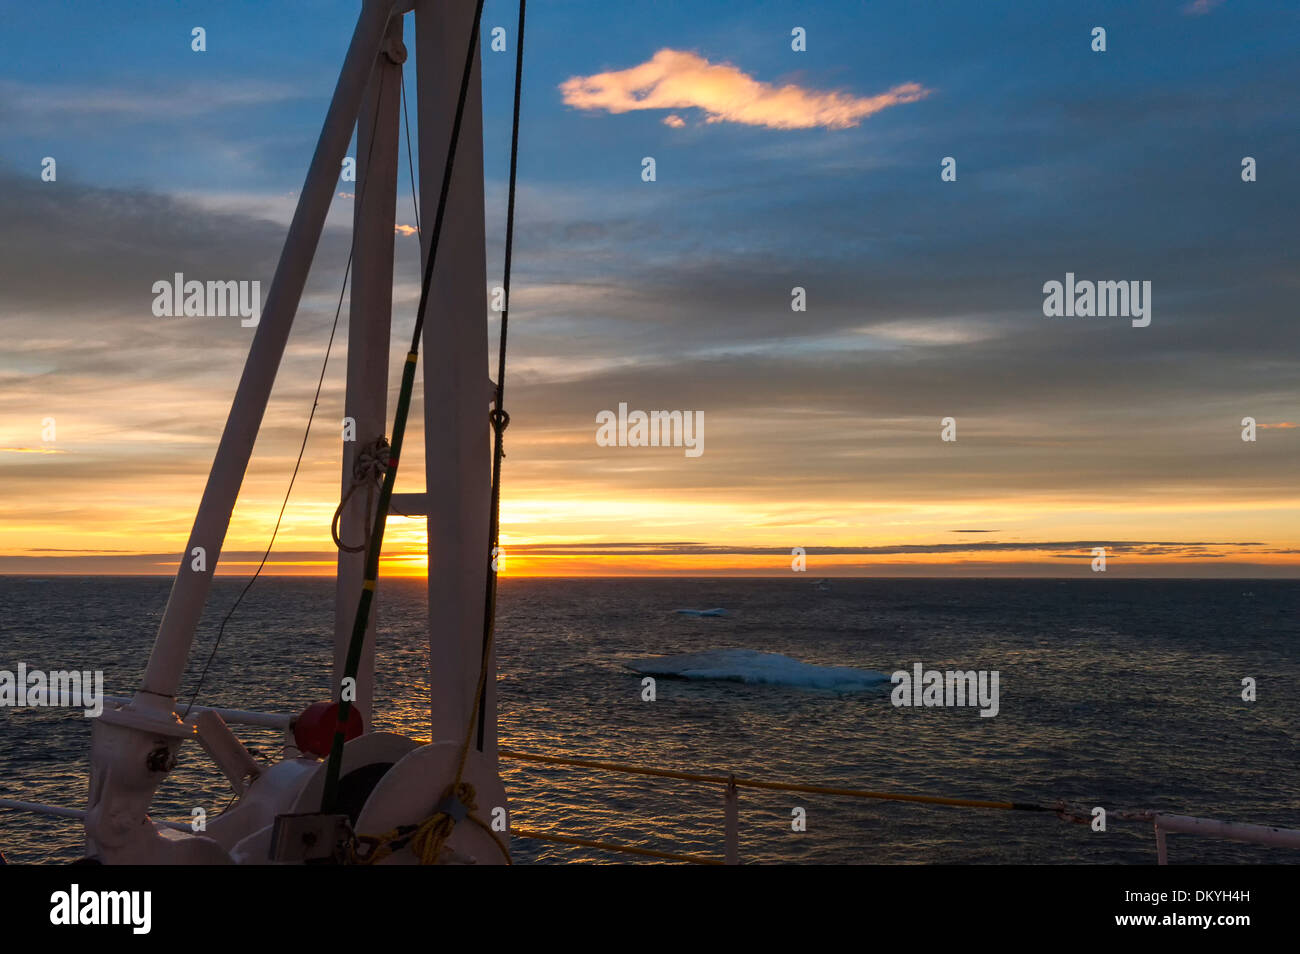 Bateau naviguant sur le soir, la lumière de la mer de Chukchi, Extrême-Orient russe Banque D'Images